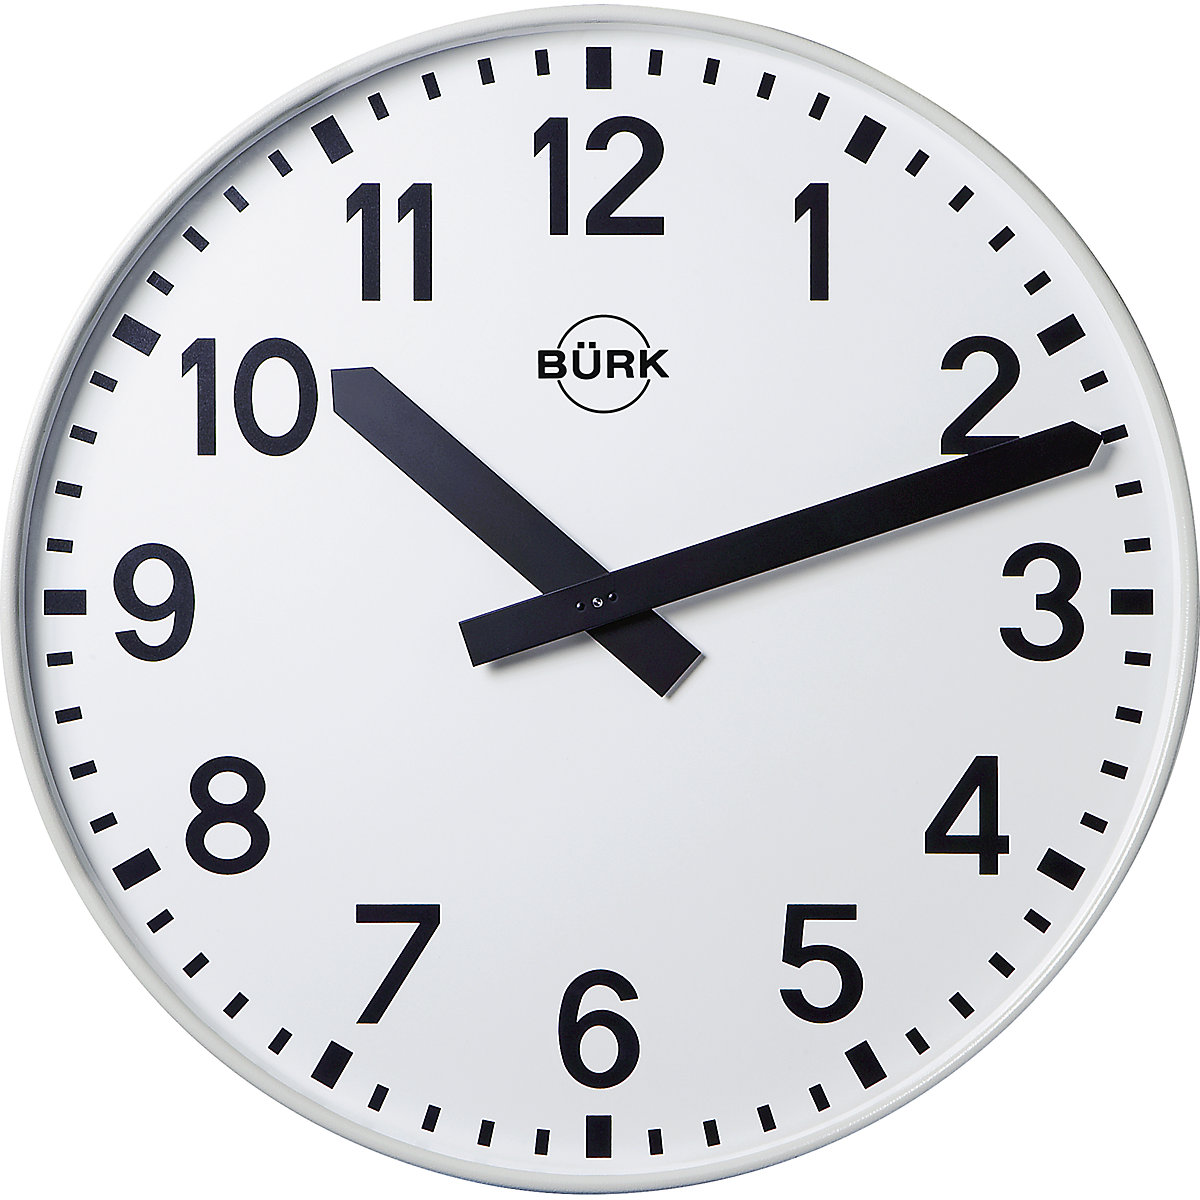 Wall clock, Ø 500 mm, quartz clock, with numbers-2